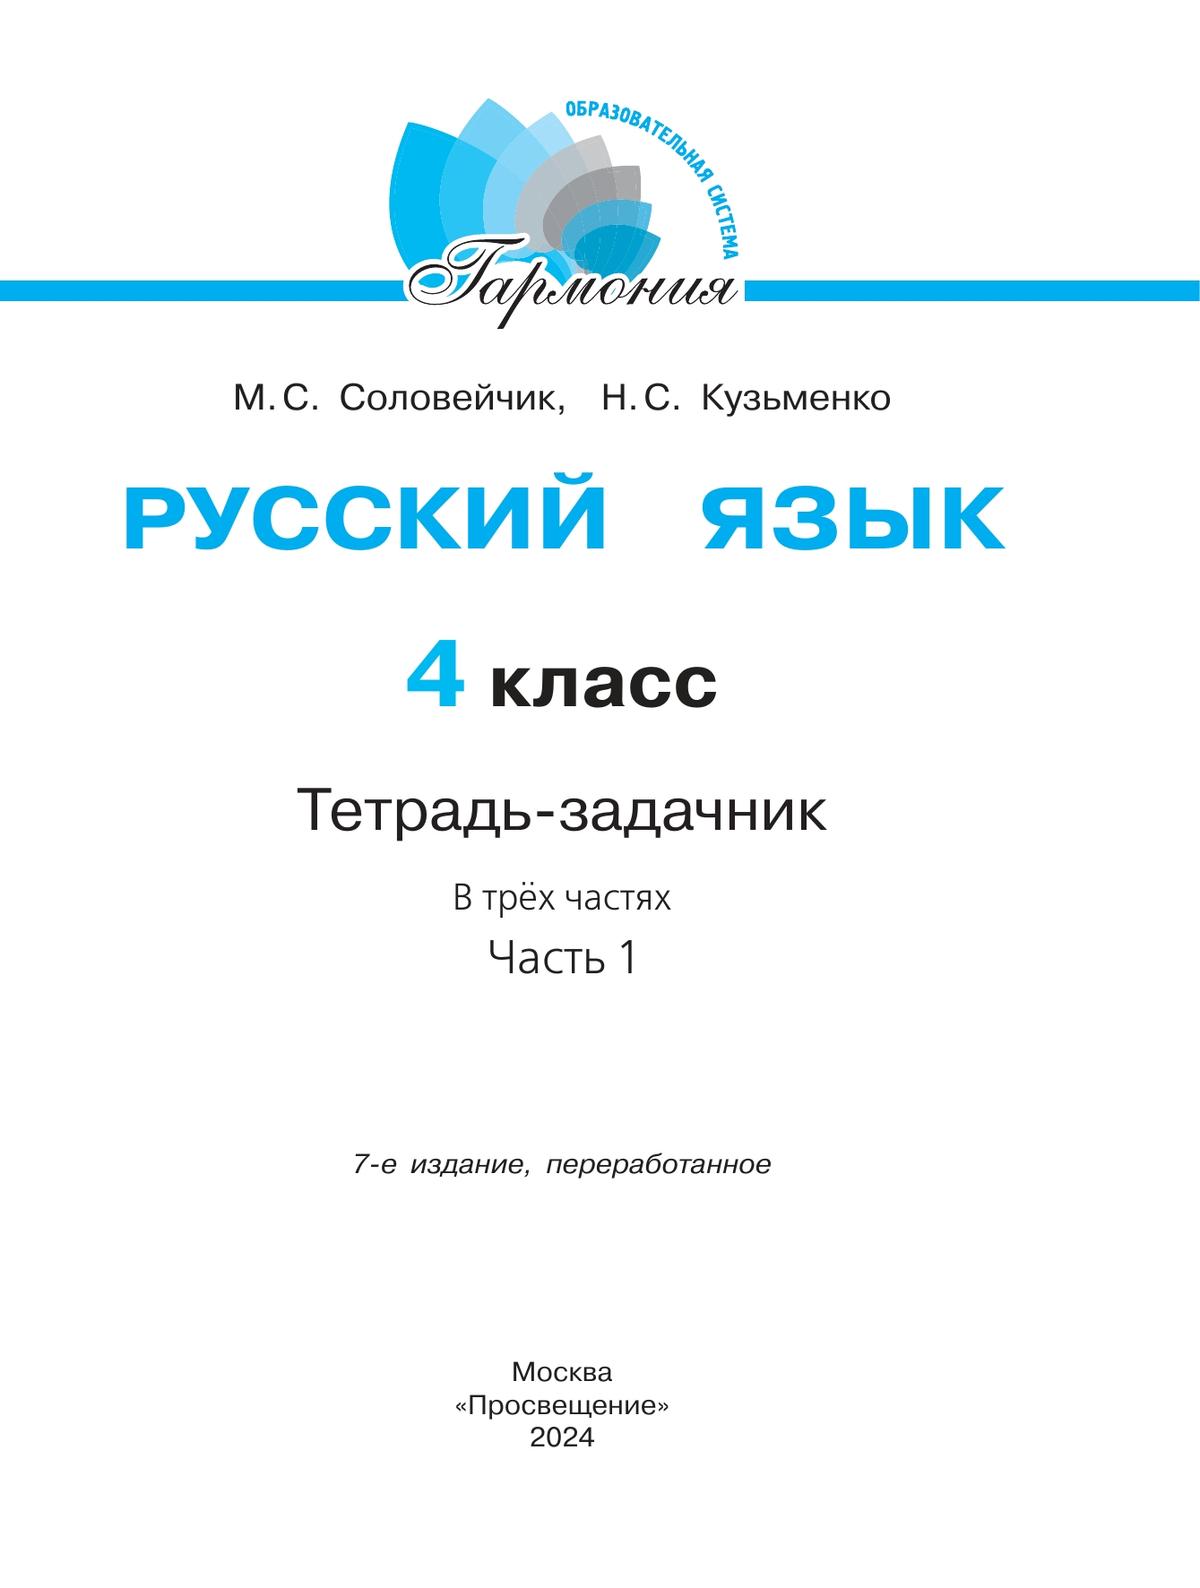 Русский язык: Тетрадь-задачник. 4 класс. В 3 частях. Часть 1 8